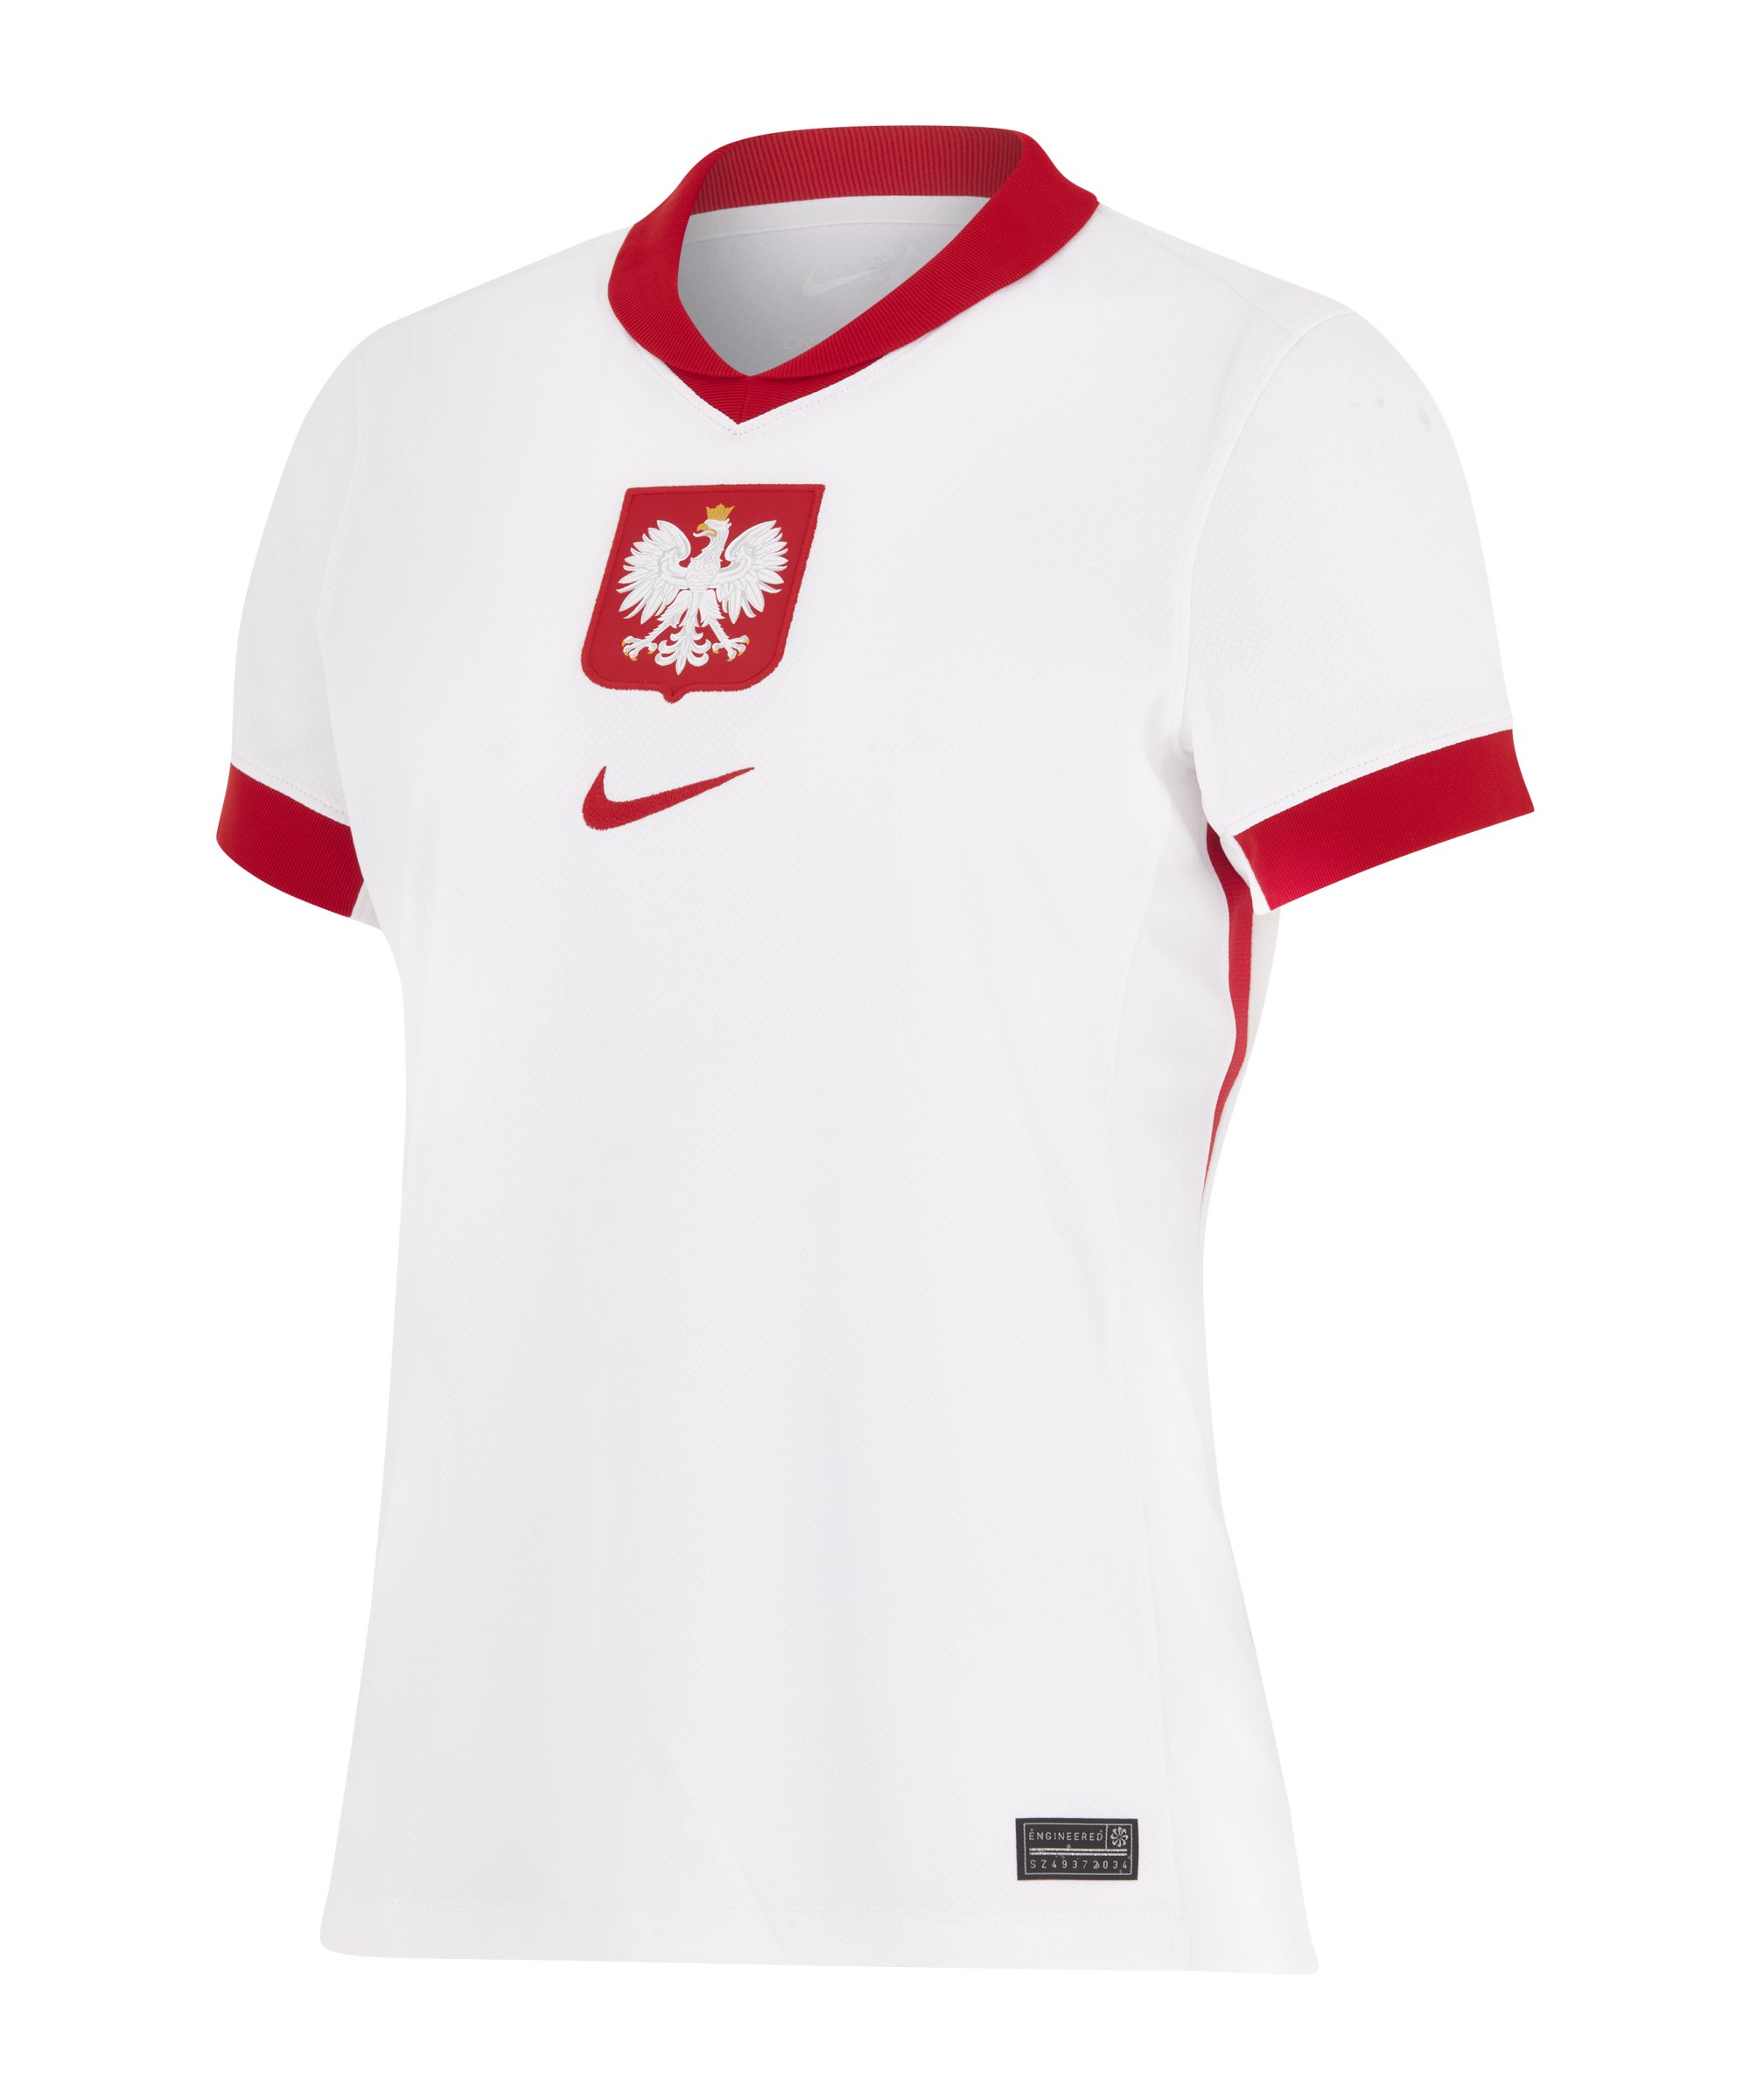 Nike Polen Trikot Home Damen Weiss Rot Rot weiss